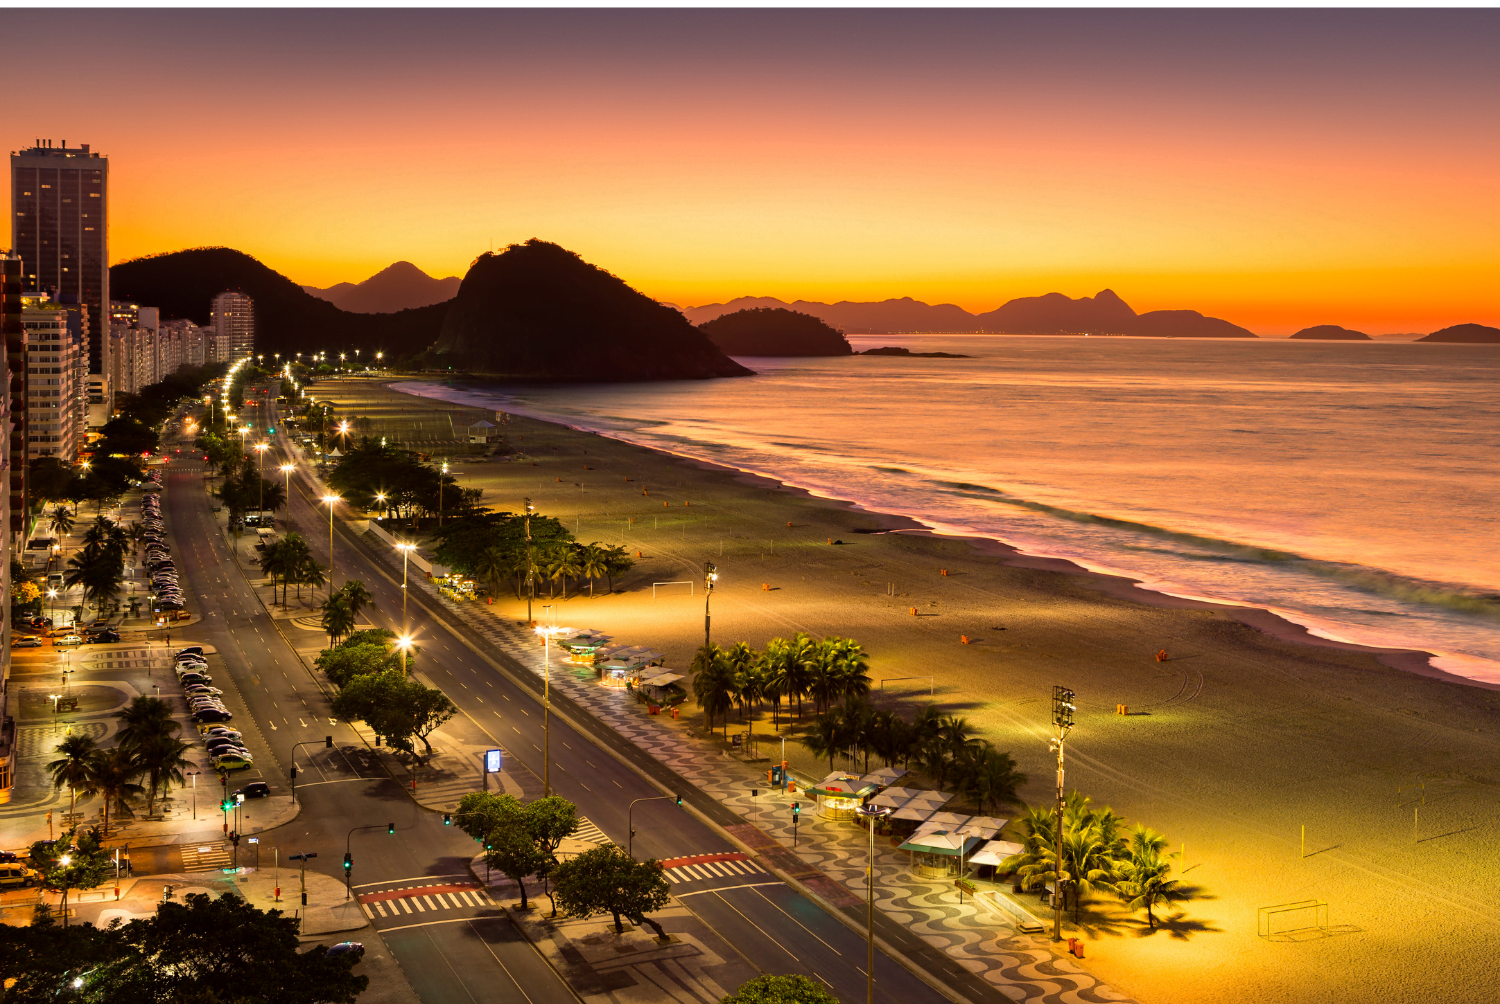 Cinema grátis na praia de Copacabana (imagem: Canva)